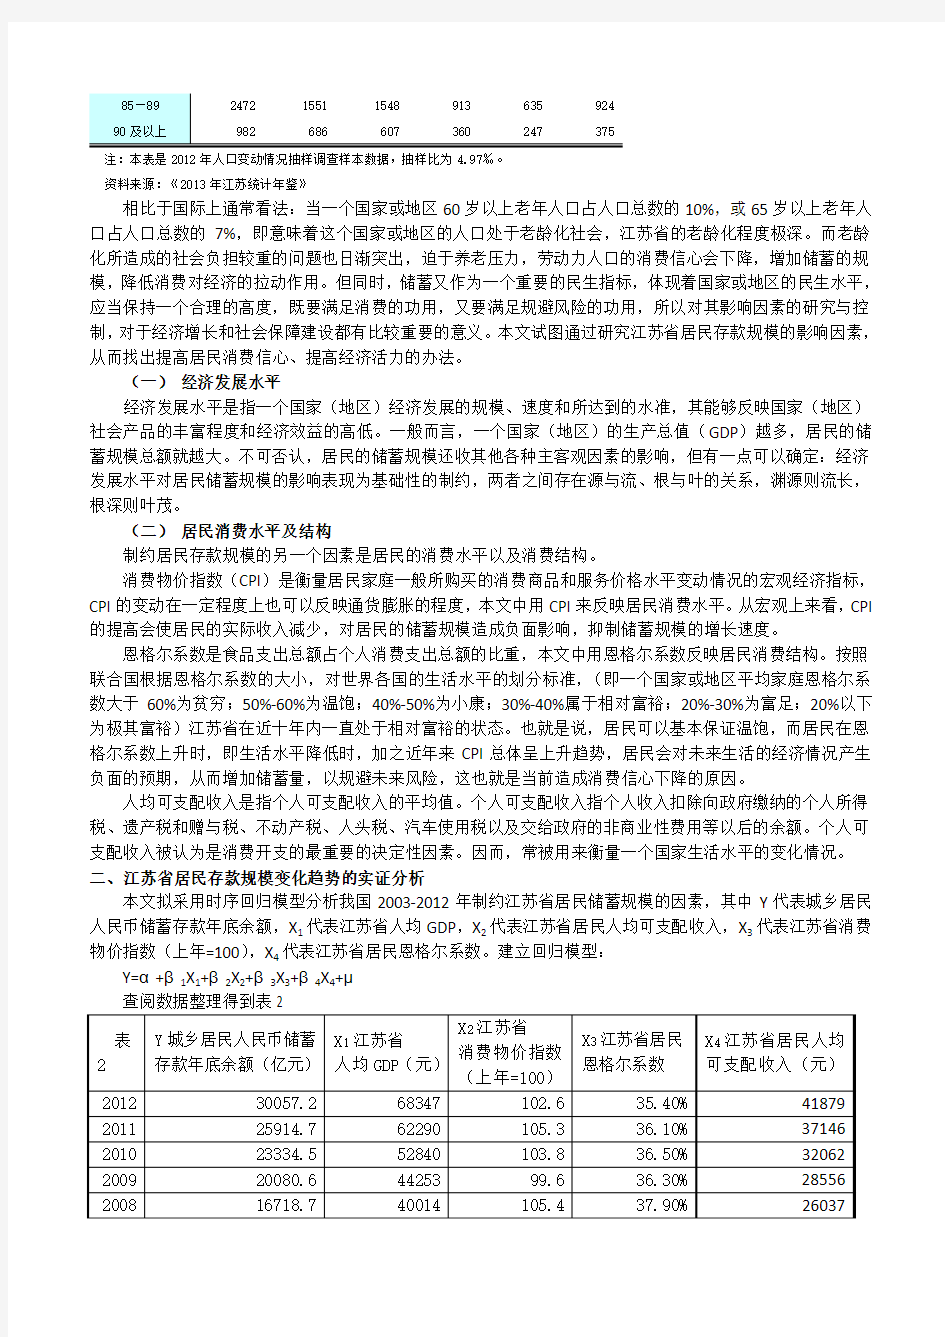 江苏省居民存款规模的影响因素的实证分析